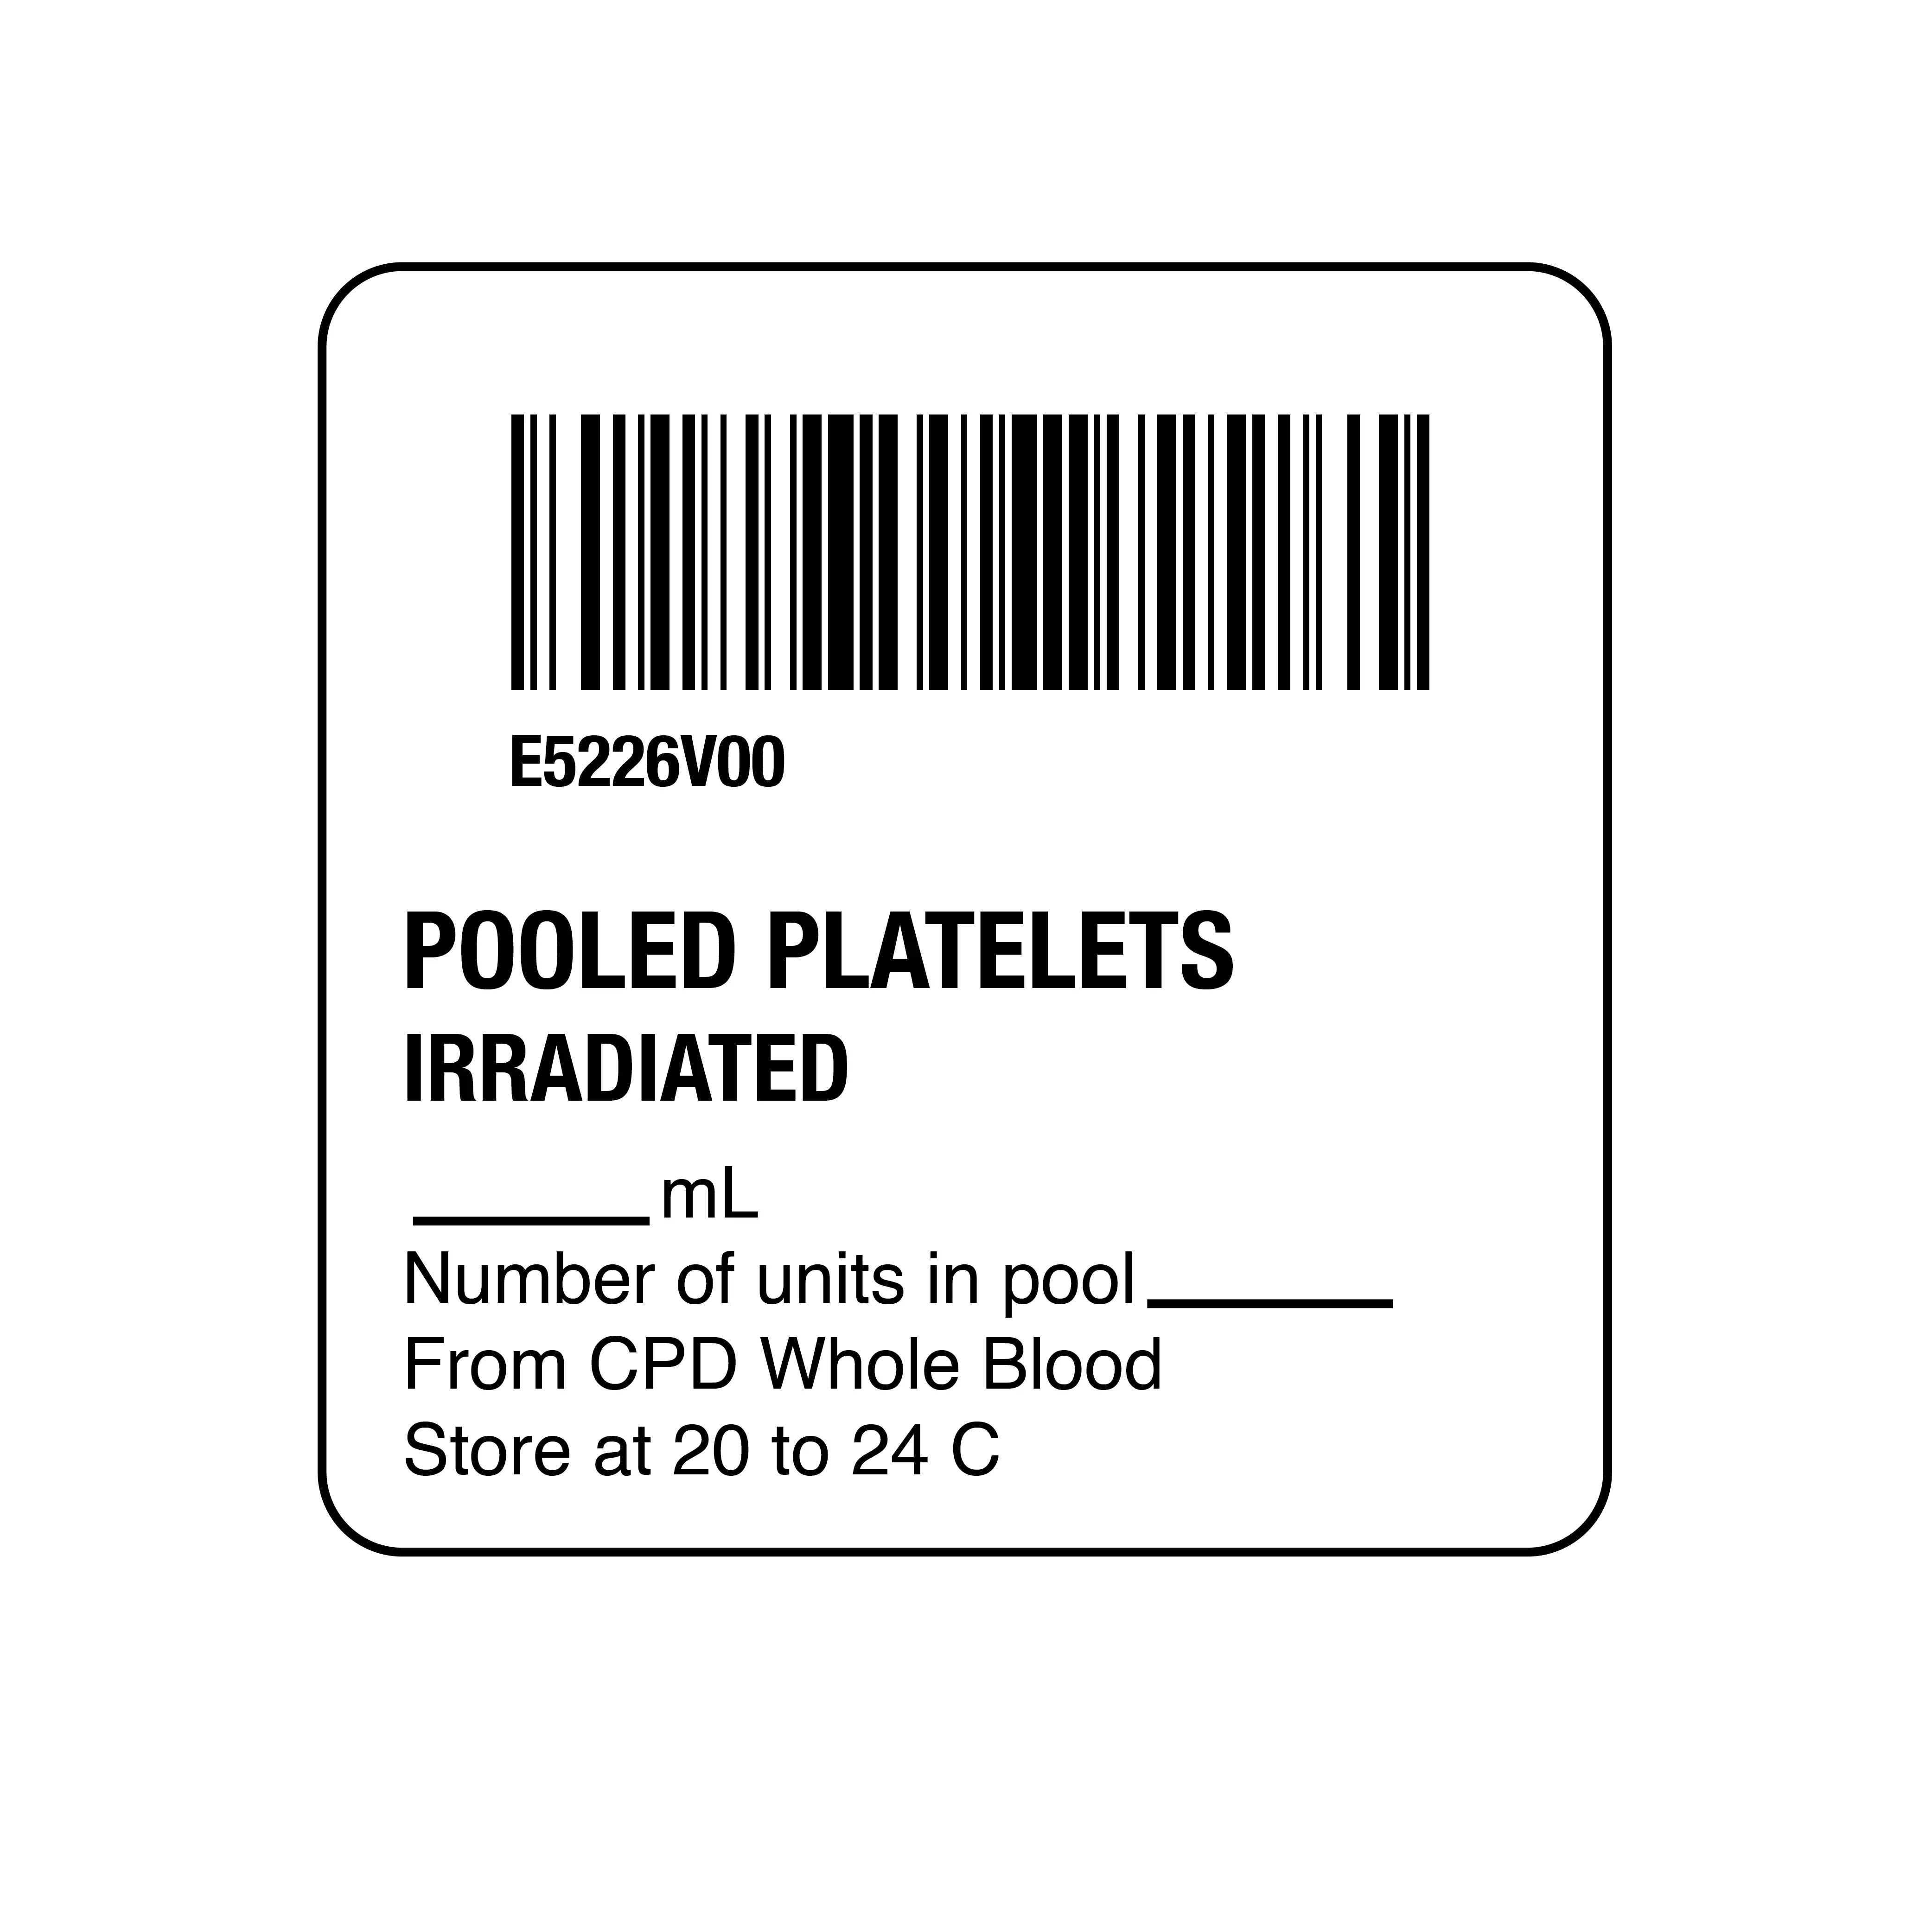 ISBT 128 Pooled Platelets Irradiated